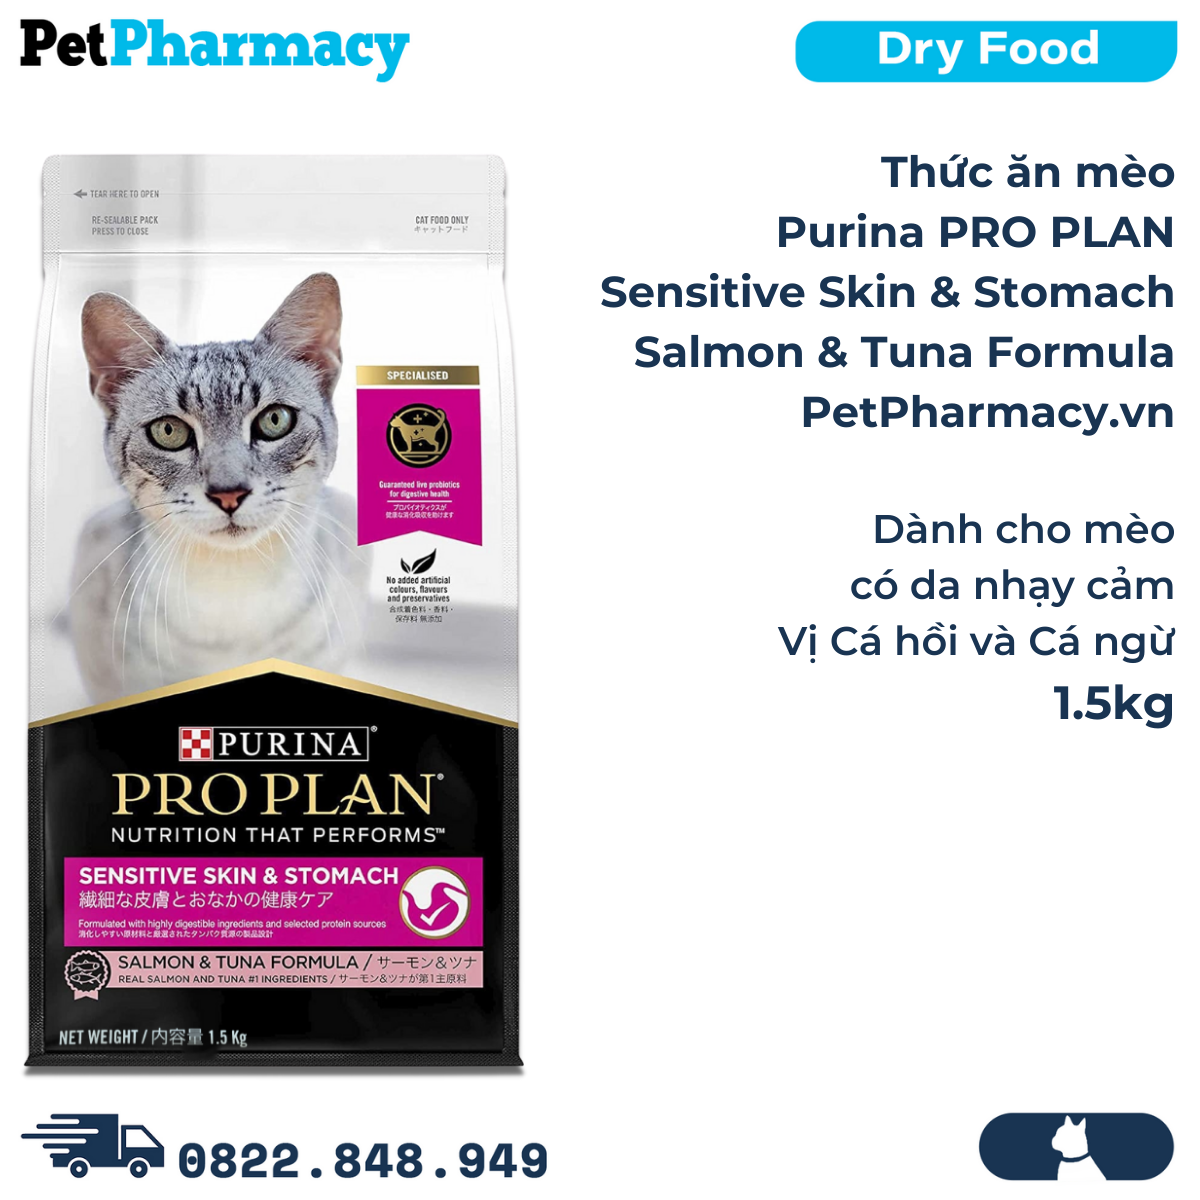  Thức ăn mèo PURINA Pro Plan Sensitive Skin & Stomach Salmon & Tuna Formula 1.5kg - Dành cho mèo da nhạy cảm, vị Cá hồi và Cá ngừ PetPharmacy 